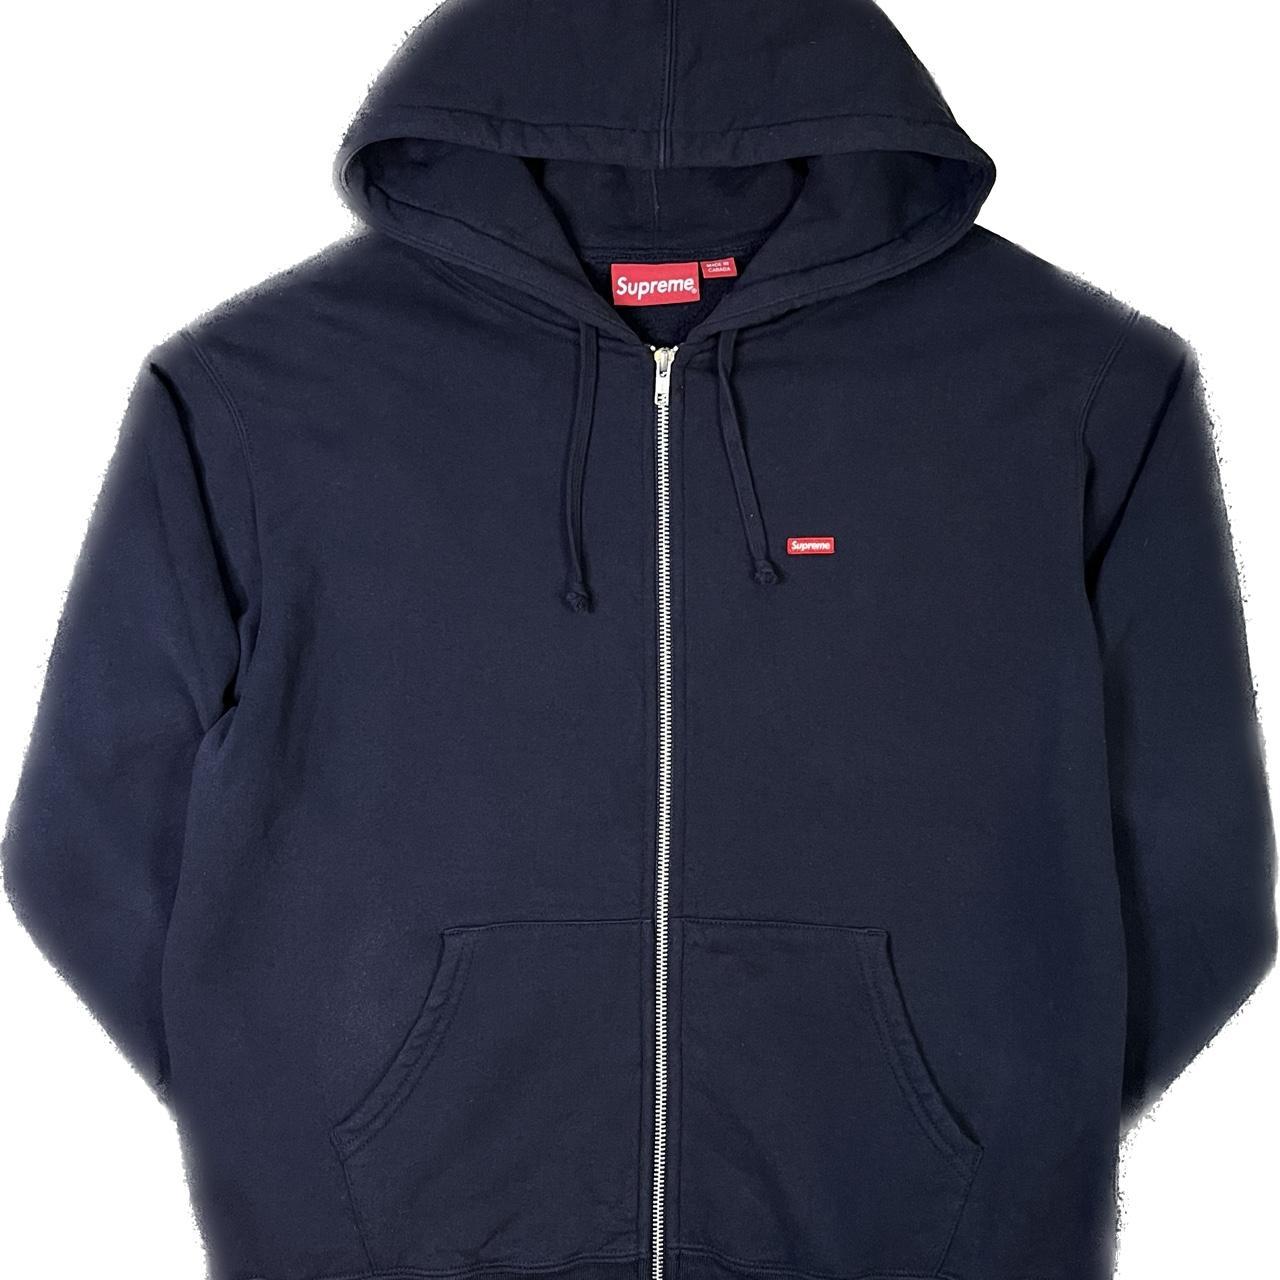 Supreme small box logo zip up hoodie hooded... - Depop